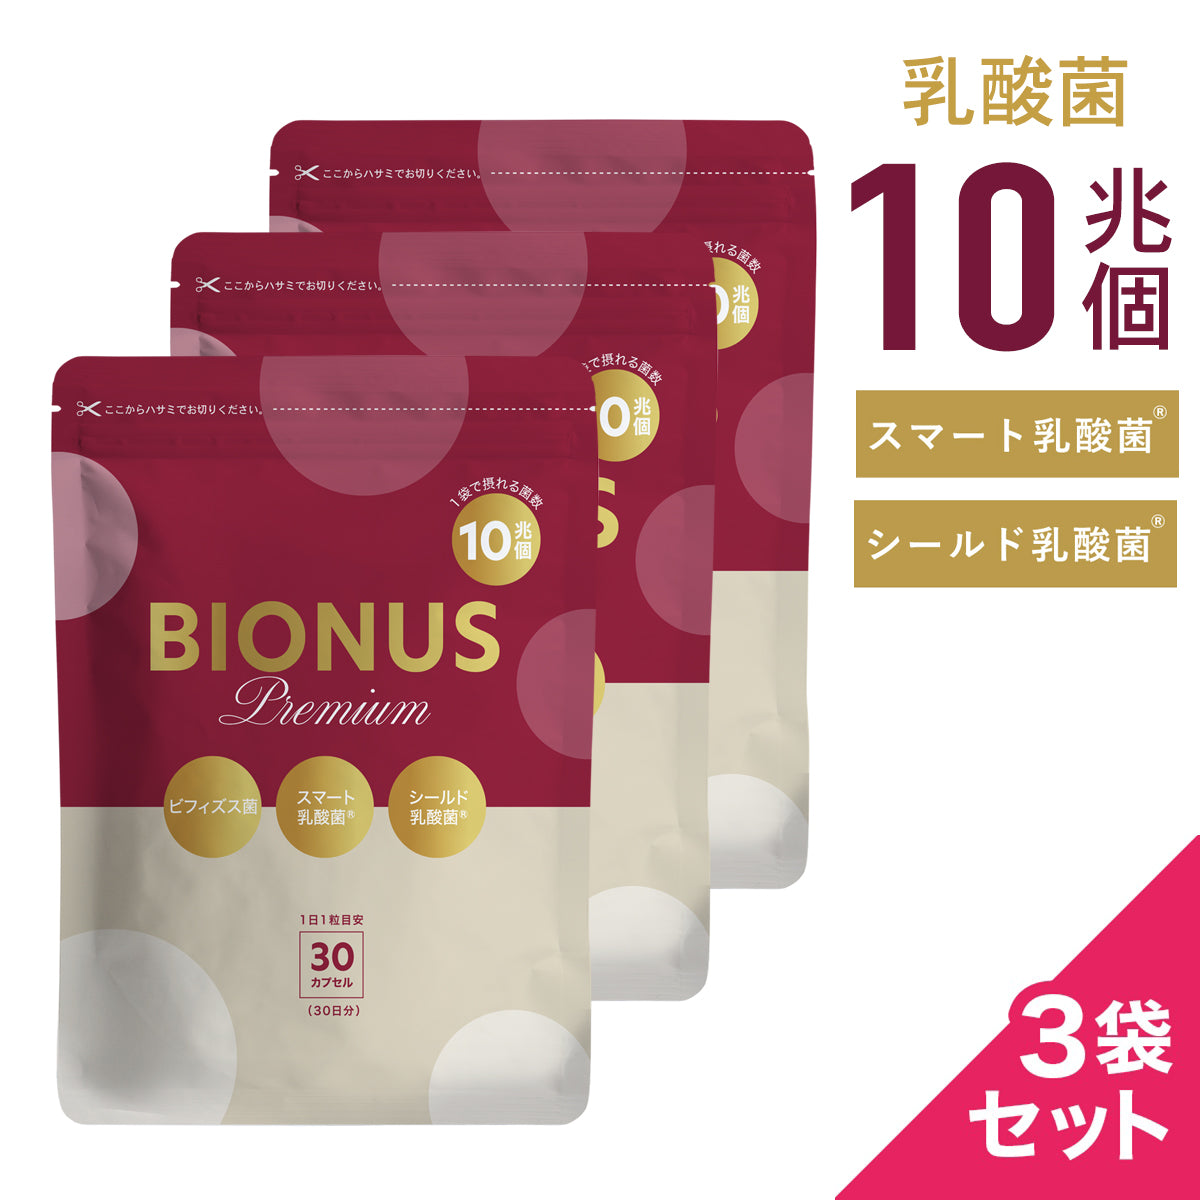 ビオナス 乳酸菌サプリプレミアム3袋セット – ビオナス公式オンライン 